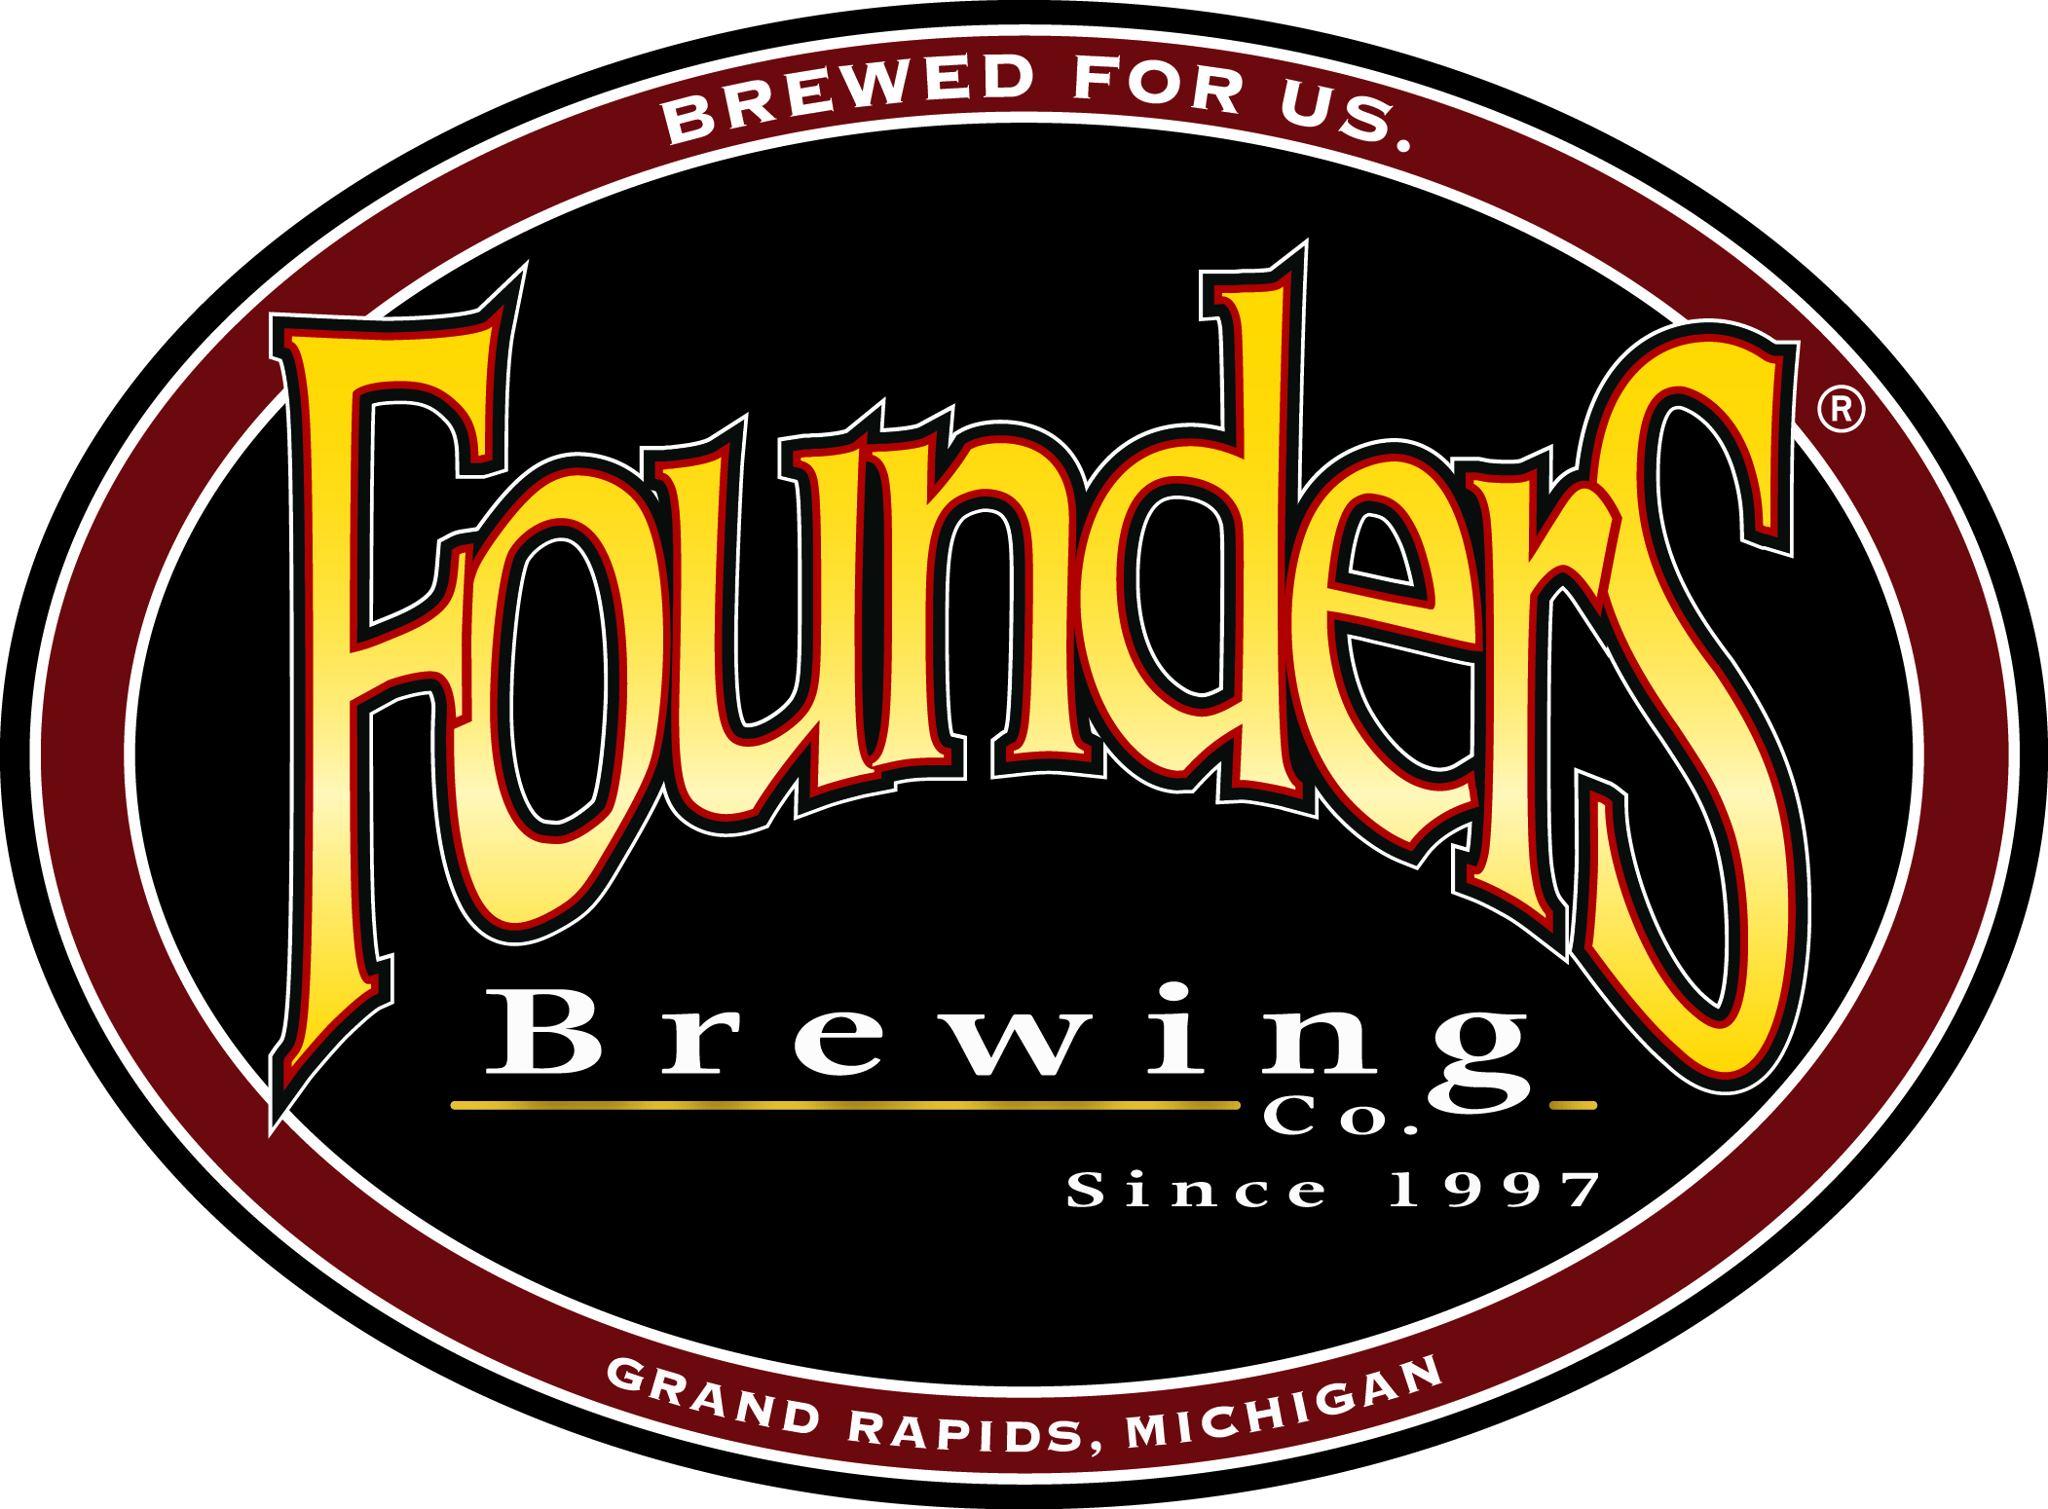 Founders Logo - founders logo - Beer Street Journal